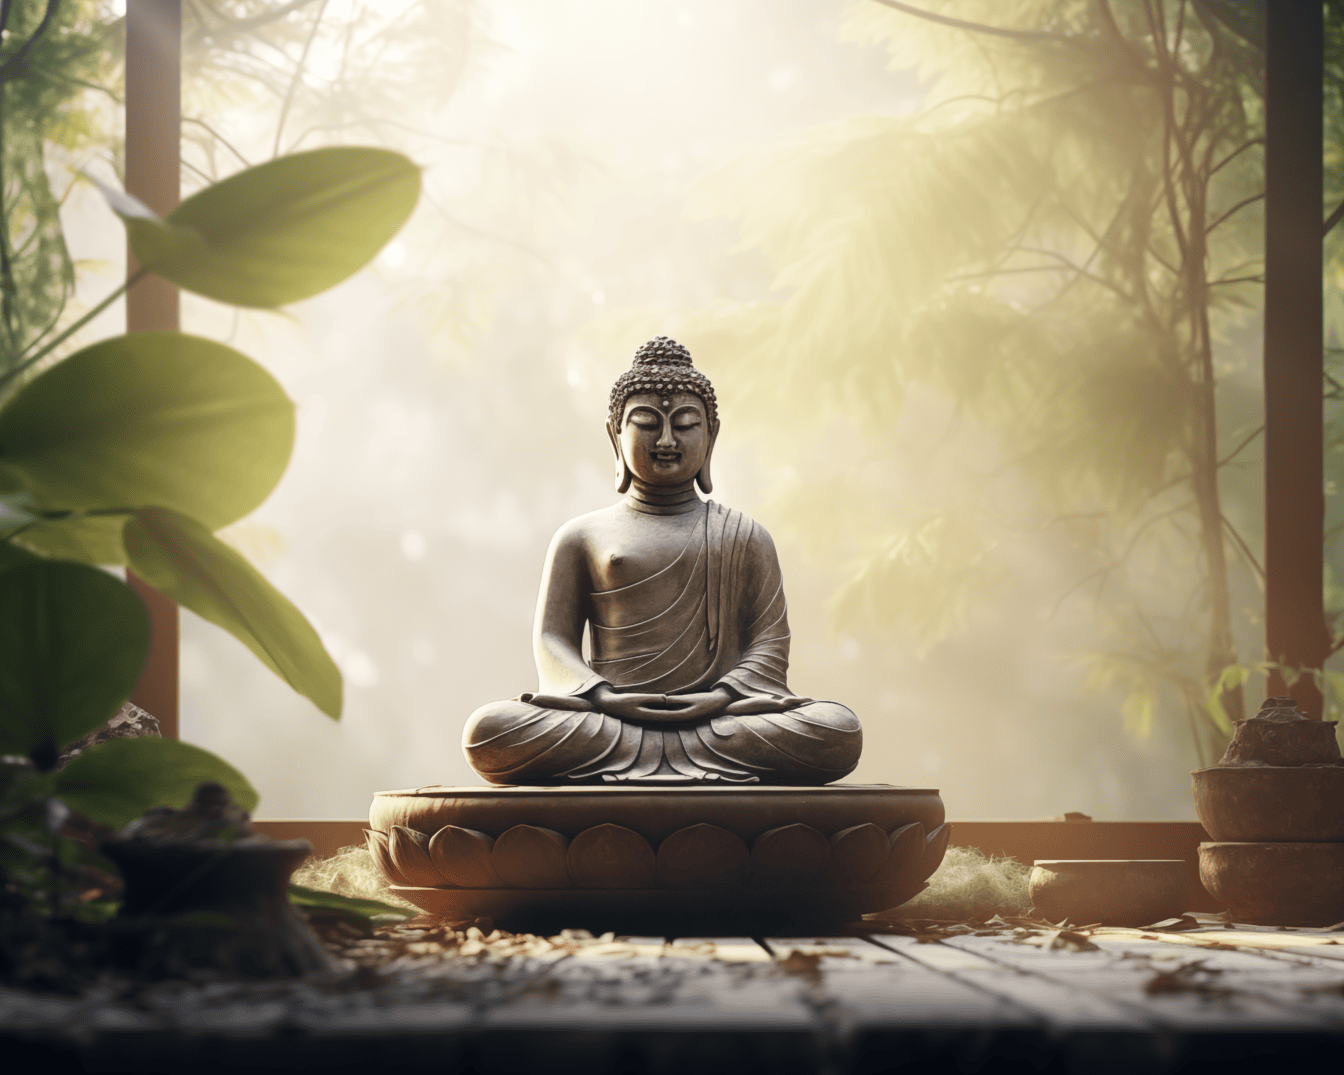 Άγαλμα του Βούδα που κάθεται στη θέση του λωτού και ασκεί διαλογισμό Ζεν στη βεράντα με απαλές ακτίνες του ήλιου στο βάθος